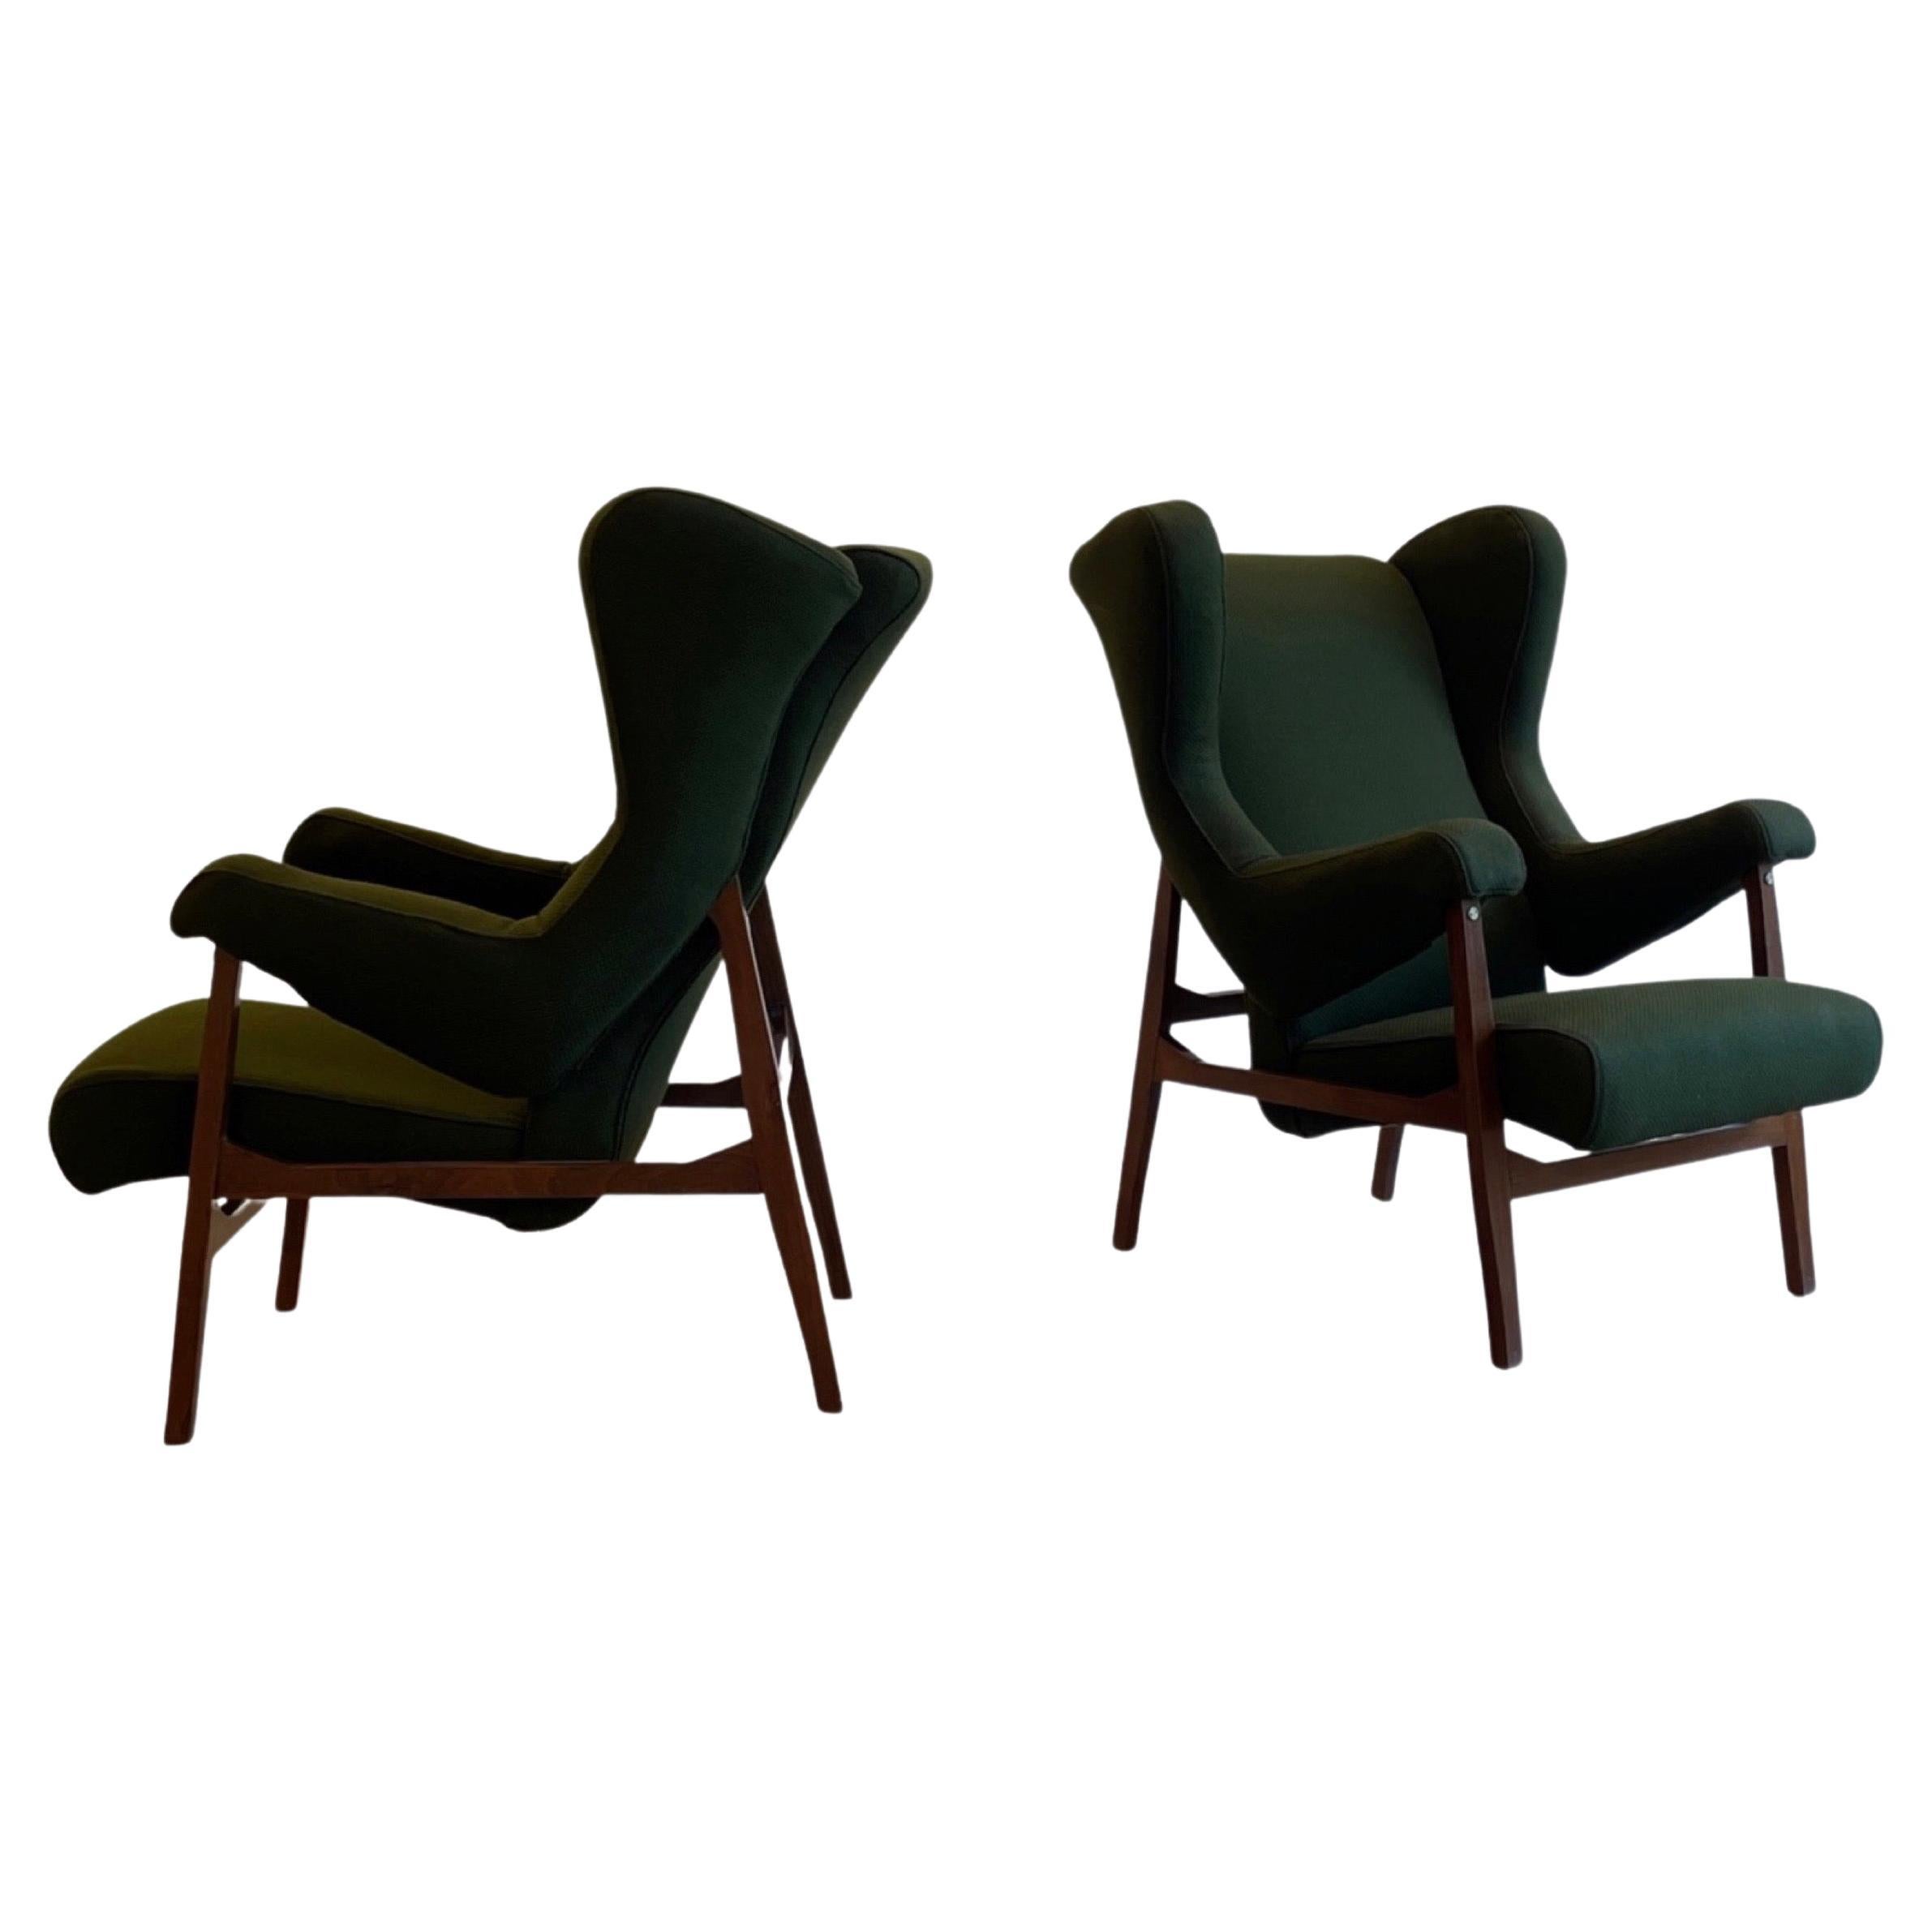 Franco Albini rare "Fiorenza" lounge chair for Arflex, Italy, 1953